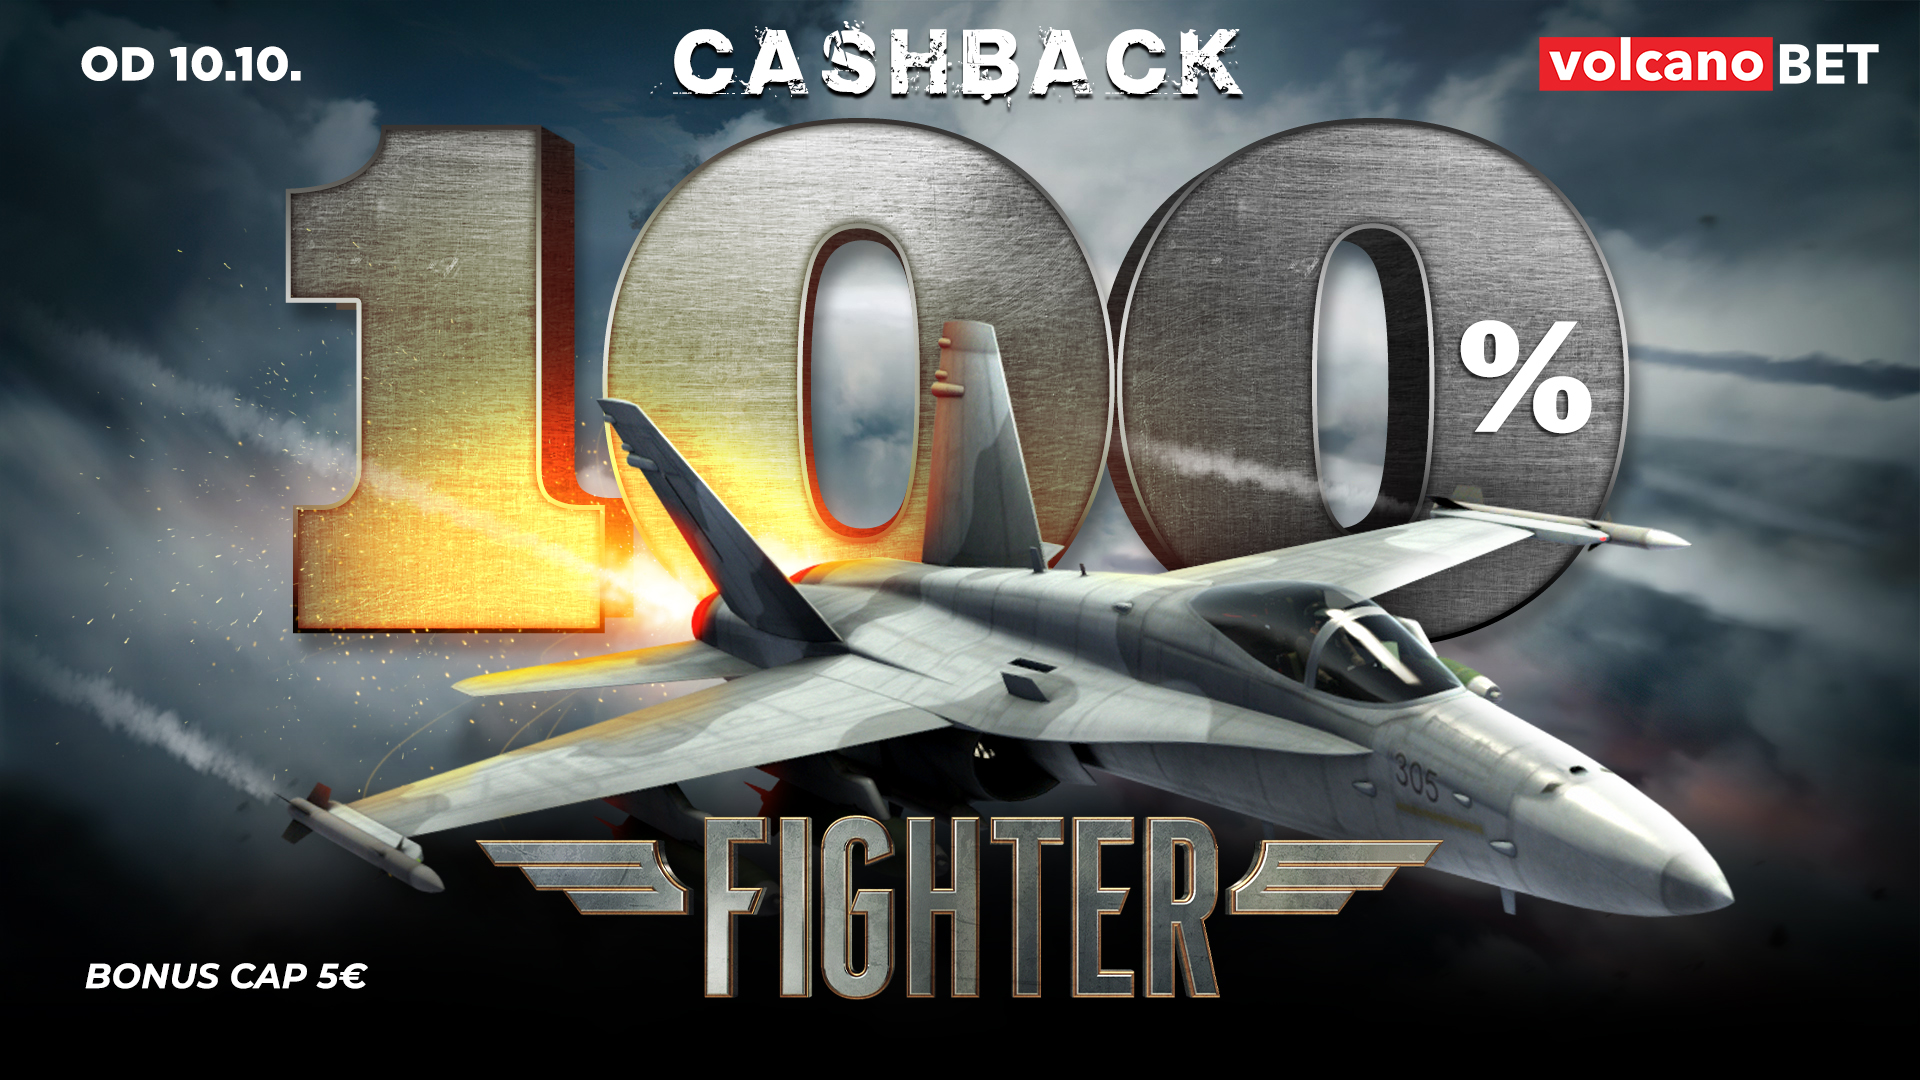 Fighter 100% CASHBACK